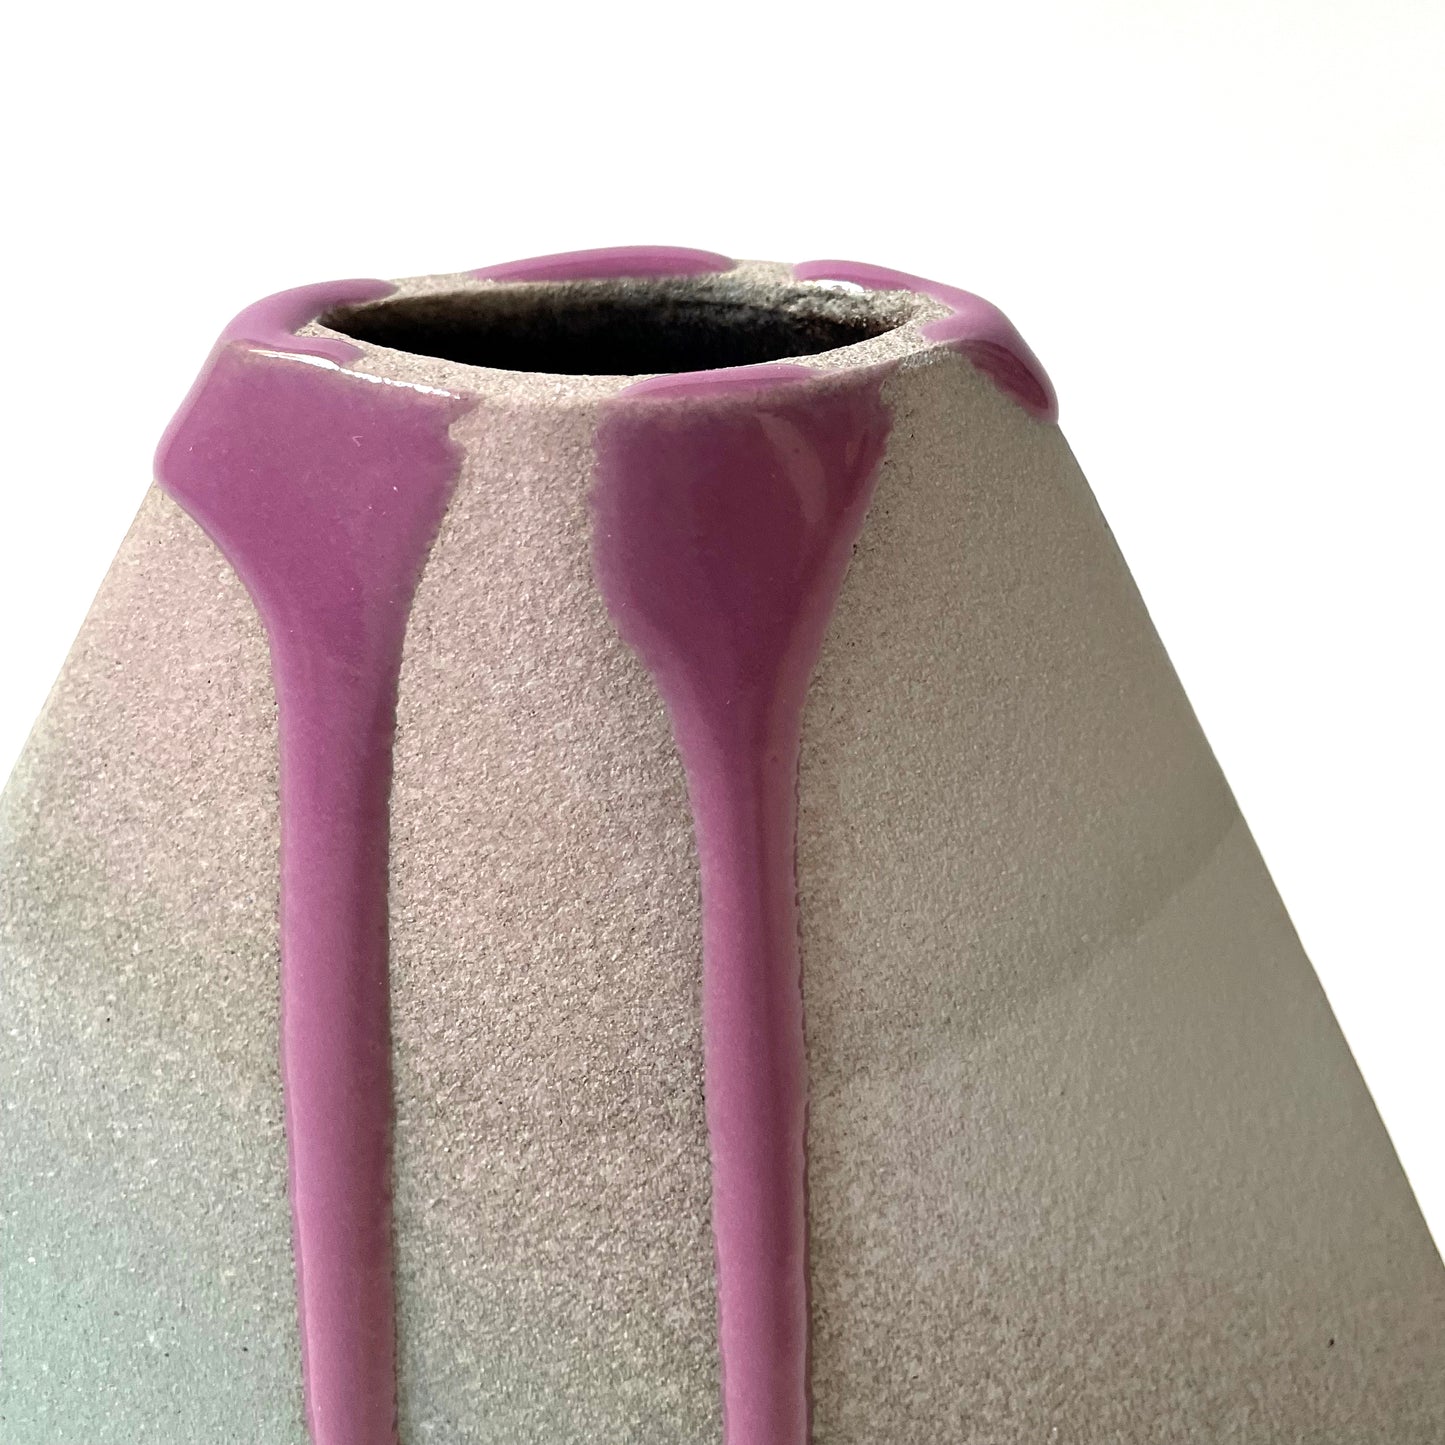 Volcano Vase (Medium-Large), Black/Teal/Purple